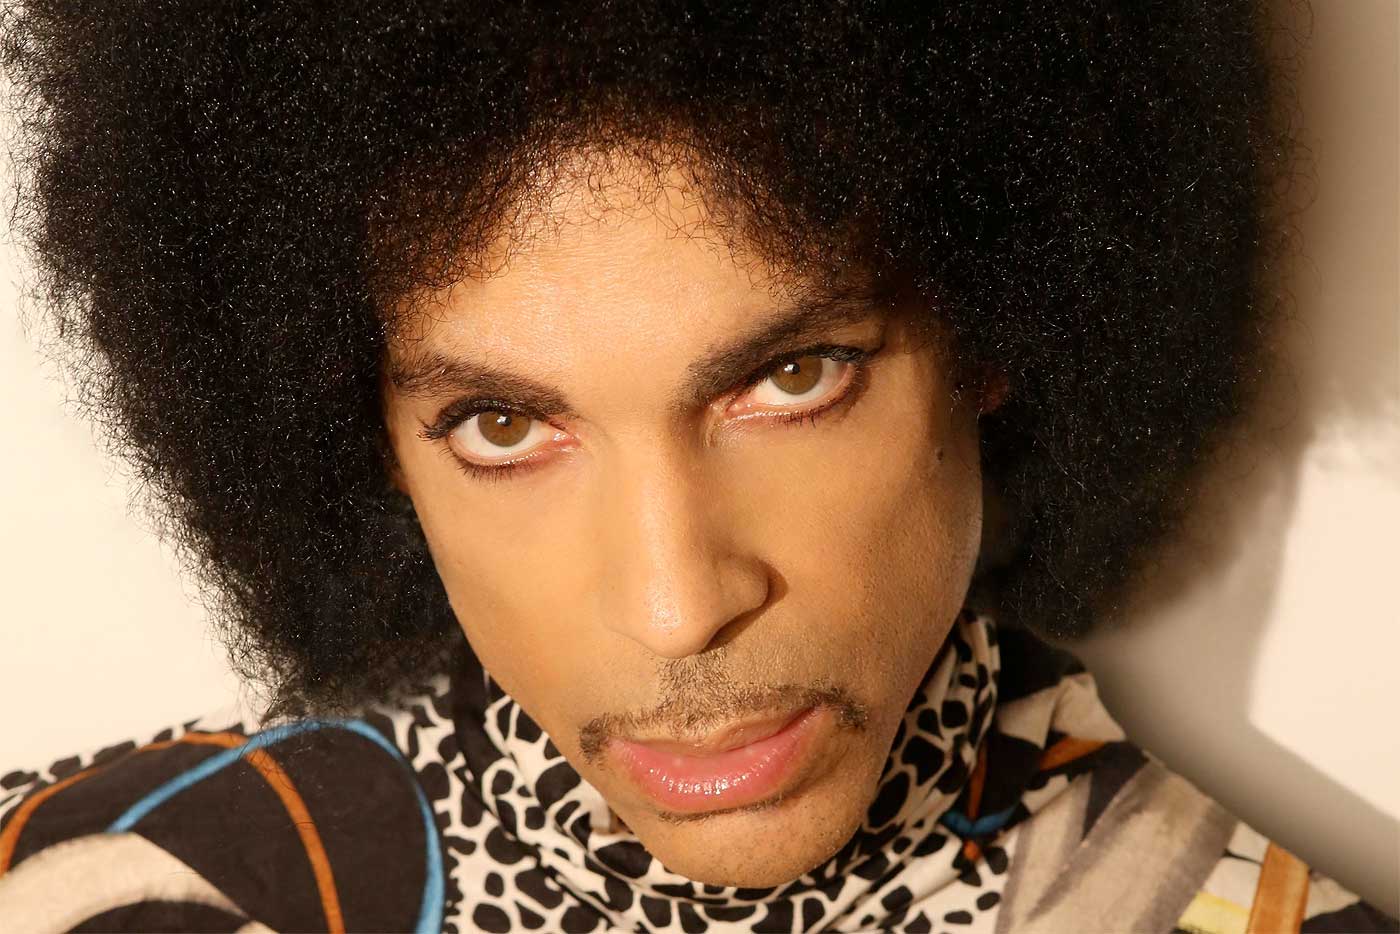 Prince fallece a los 57 años de edad